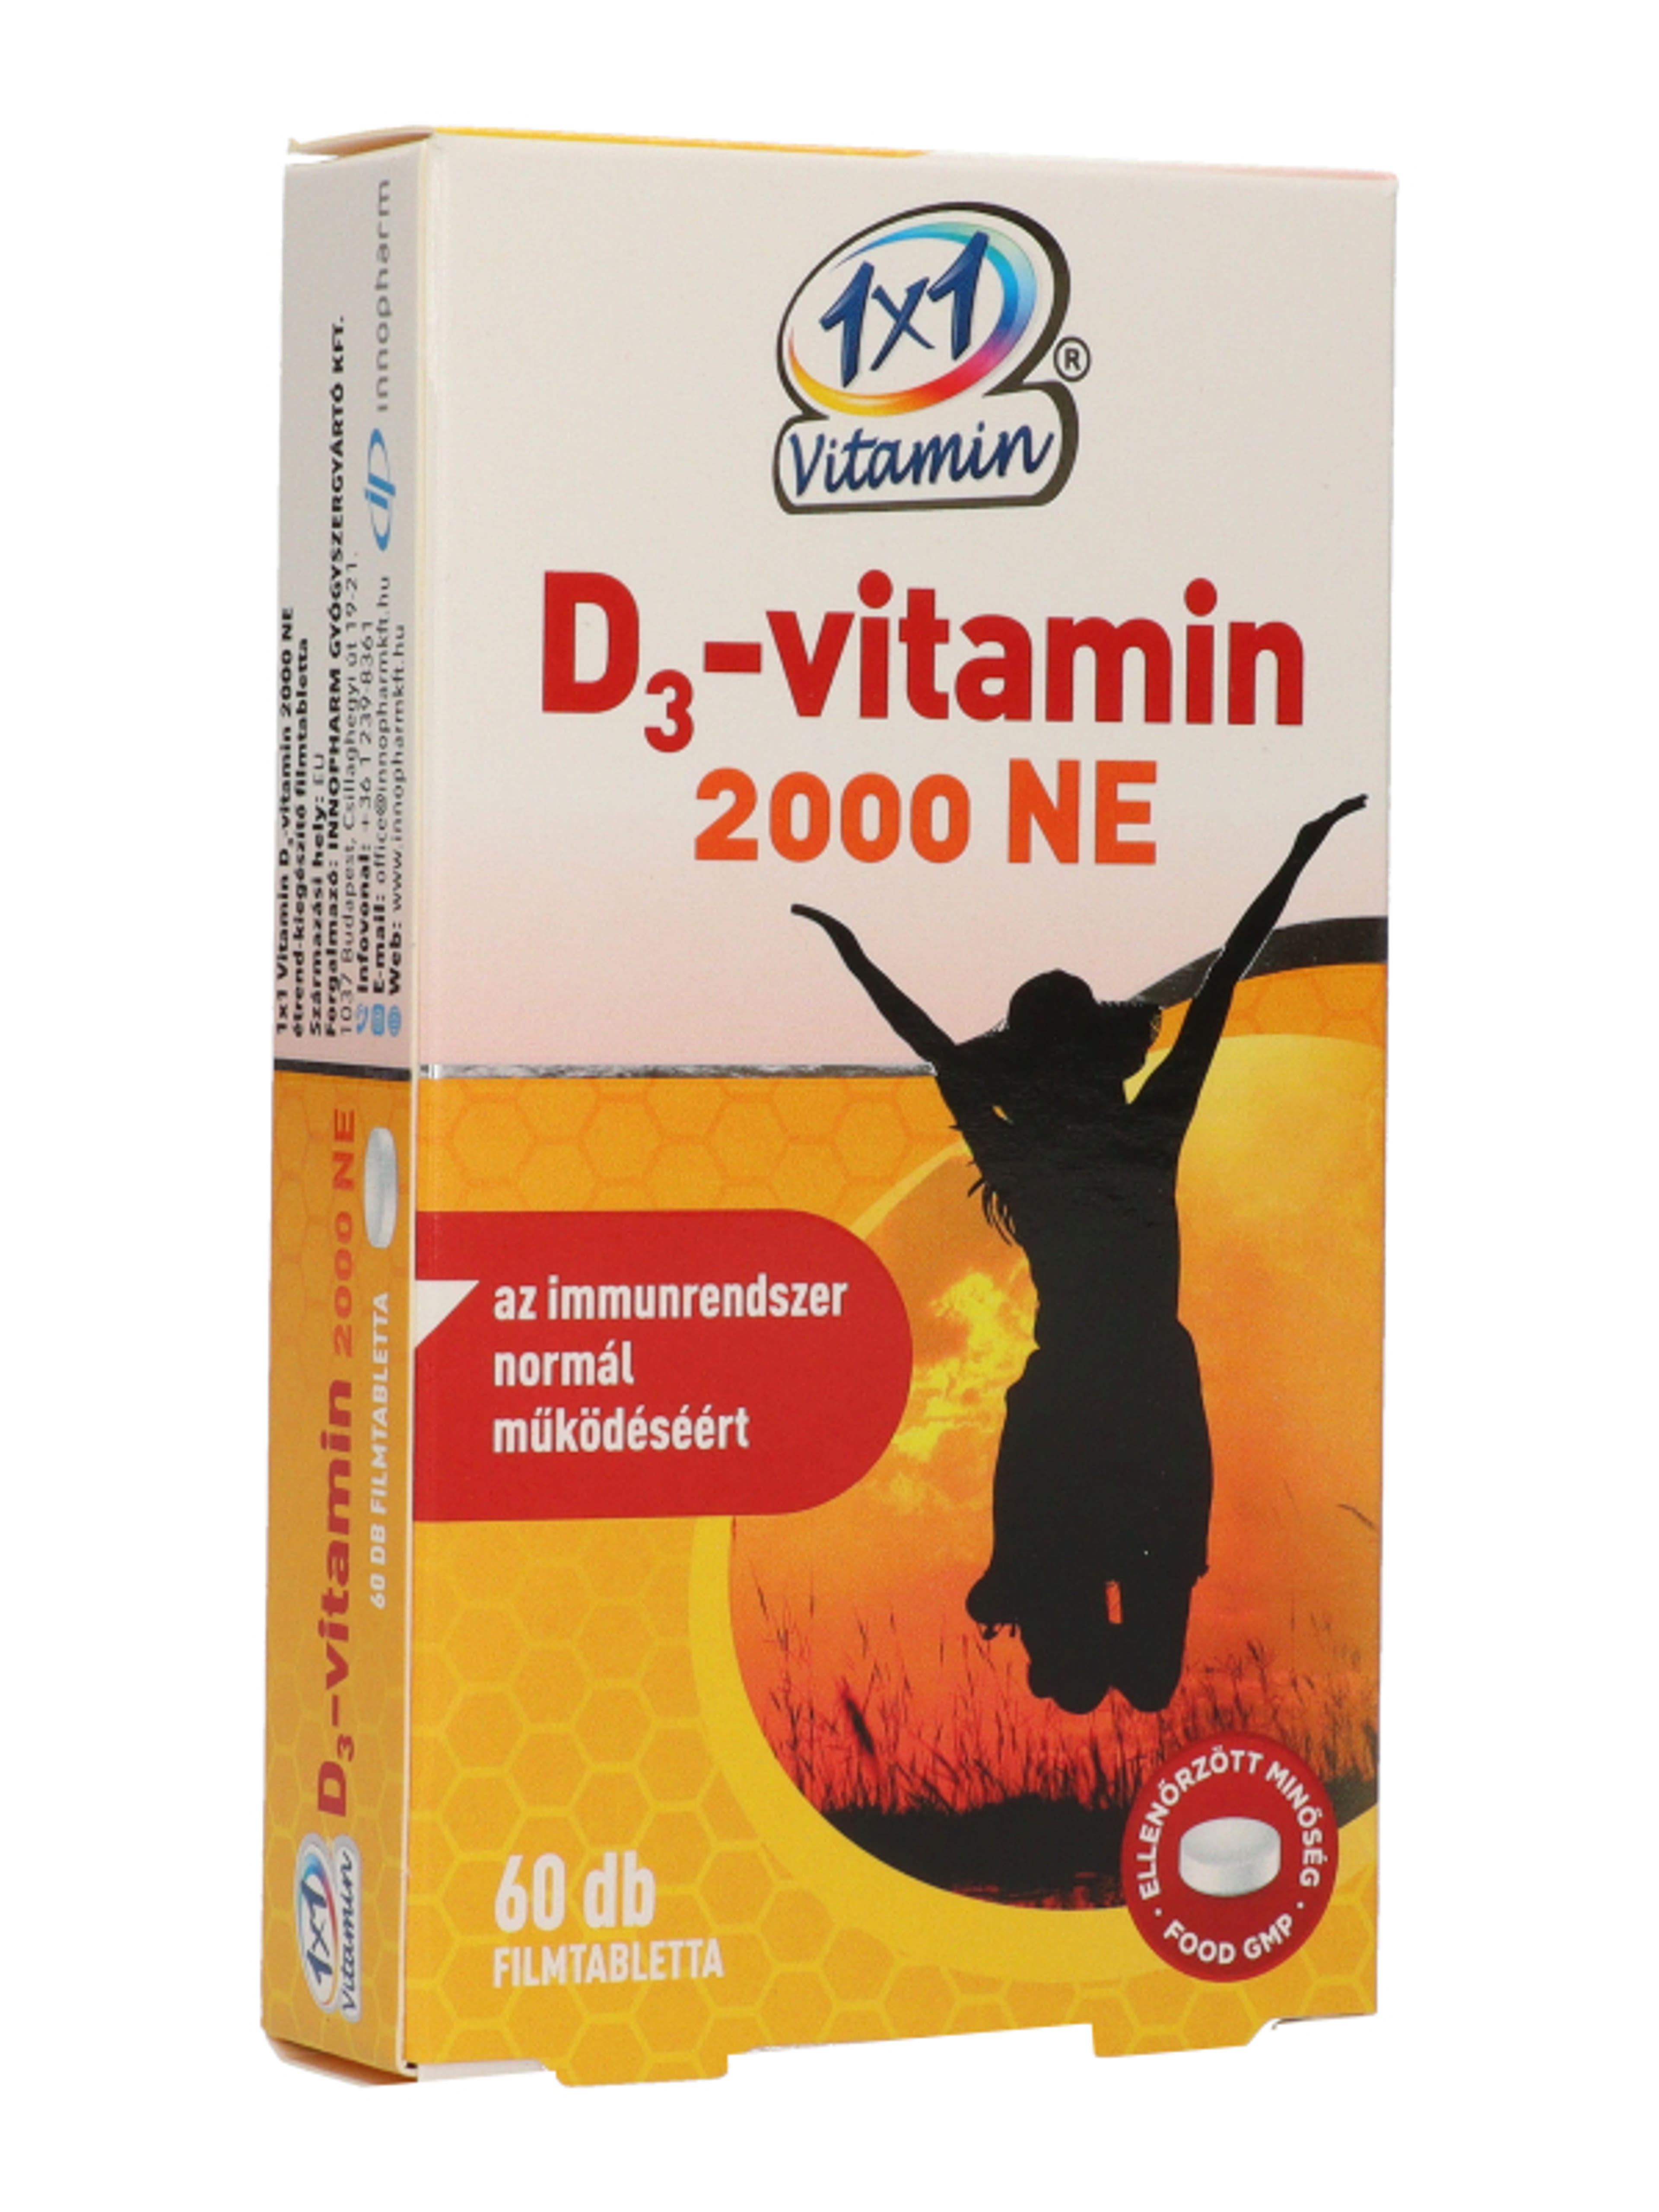 1x1 Vitamin D3 2000Ne filmtabletta - 60 db-5